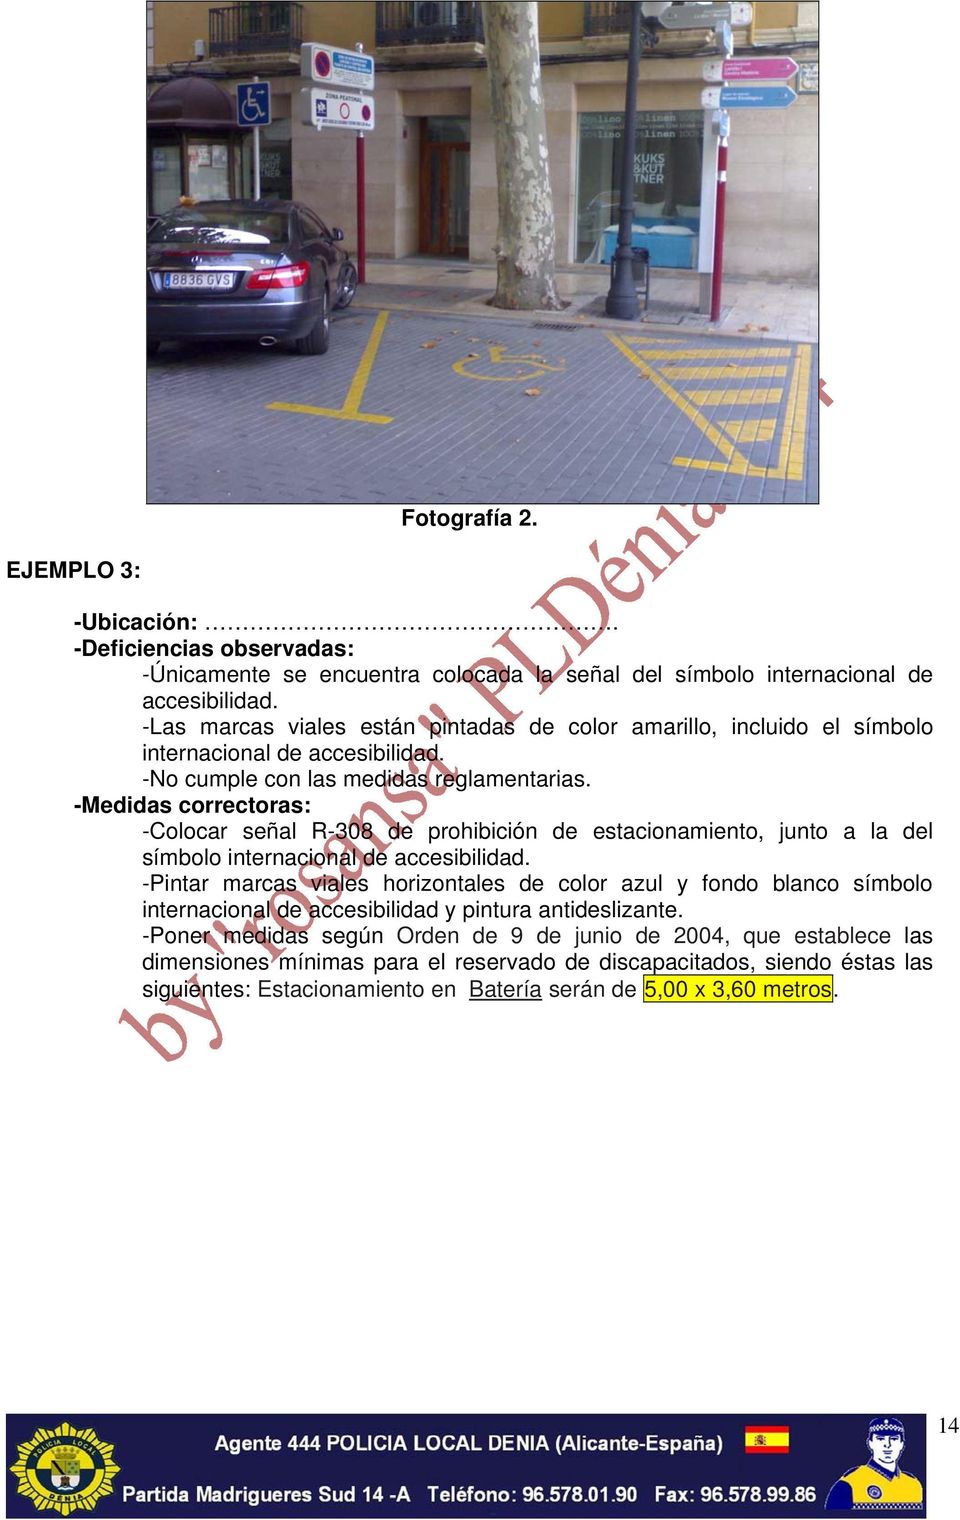 -Medidas correctoras: -Colocar señal R-308 de prohibición de estacionamiento, junto a la del símbolo internacional de accesibilidad.